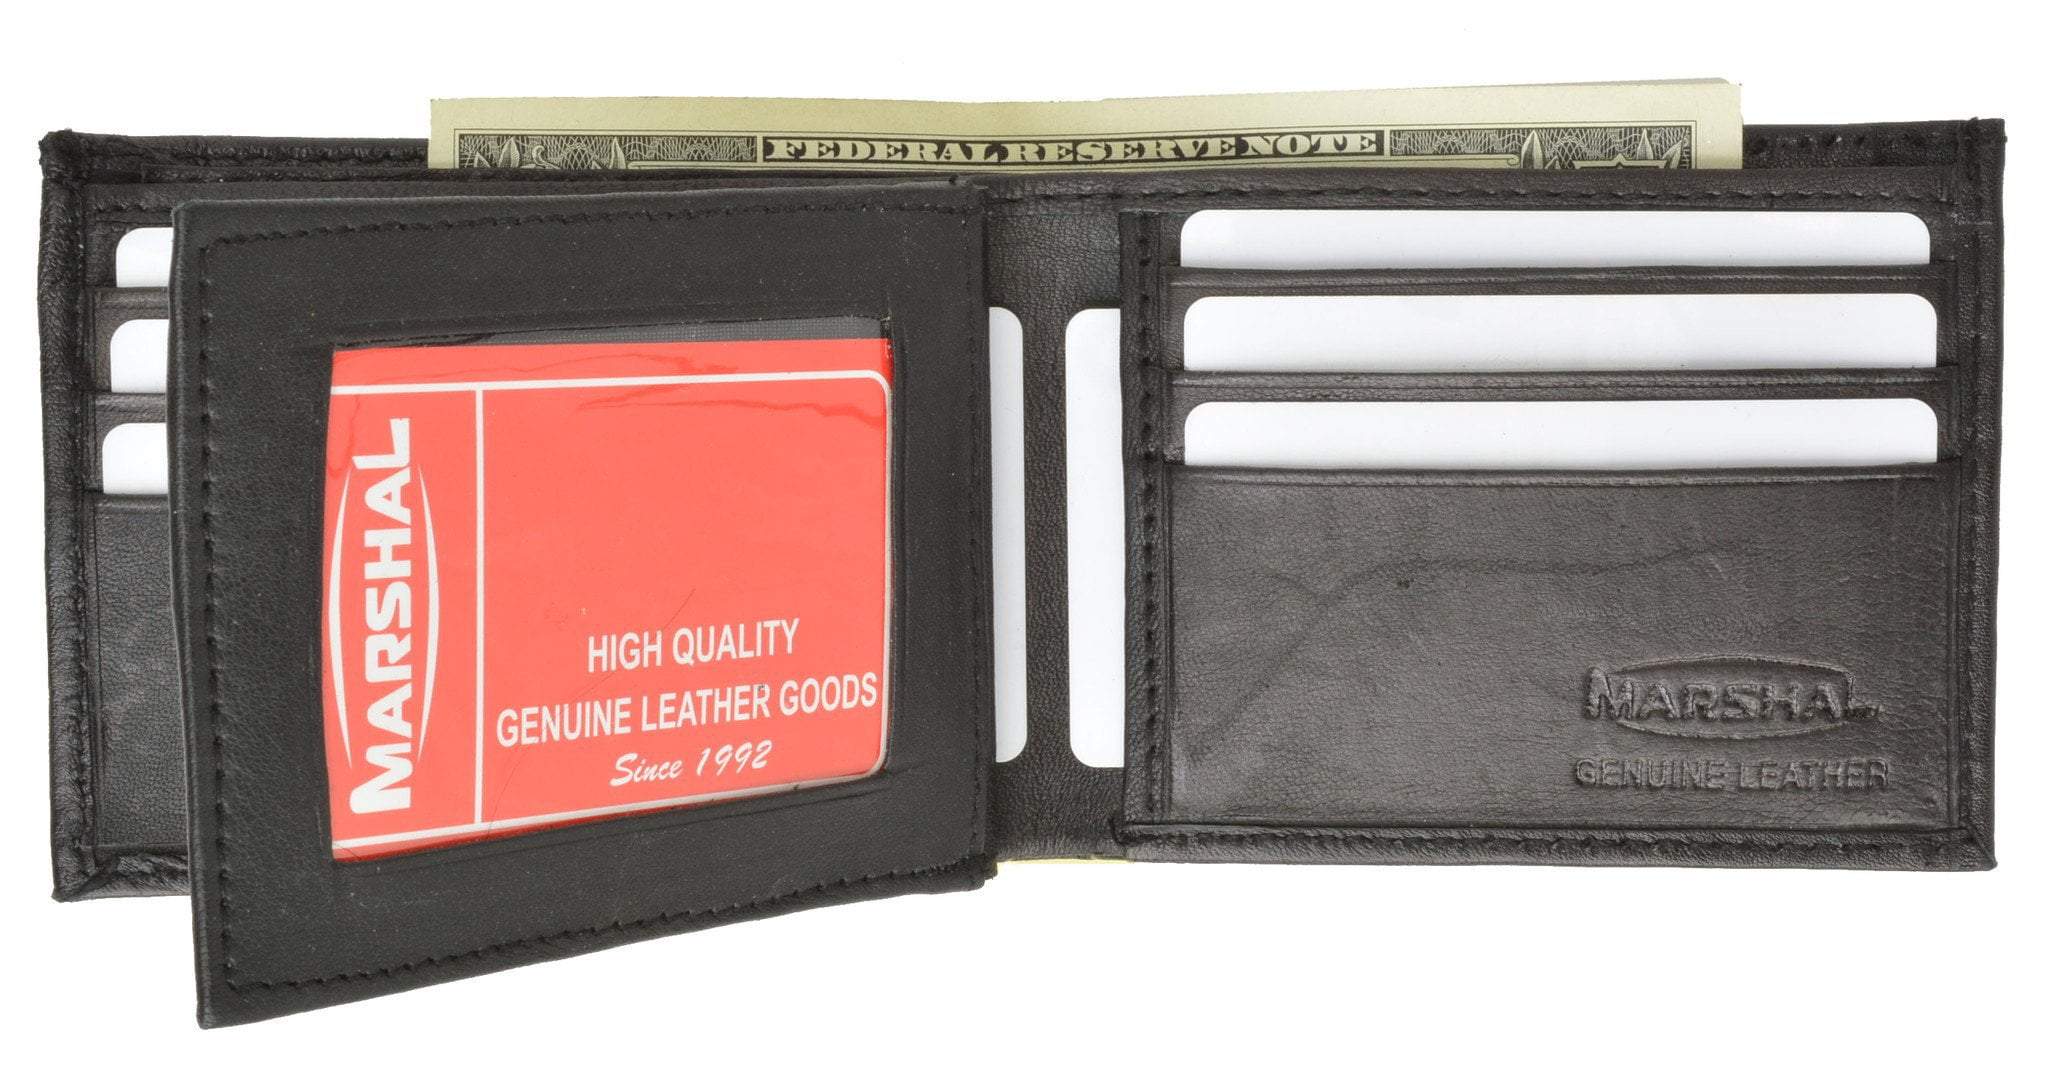 Genuine Leather Wallet Men Key Holder